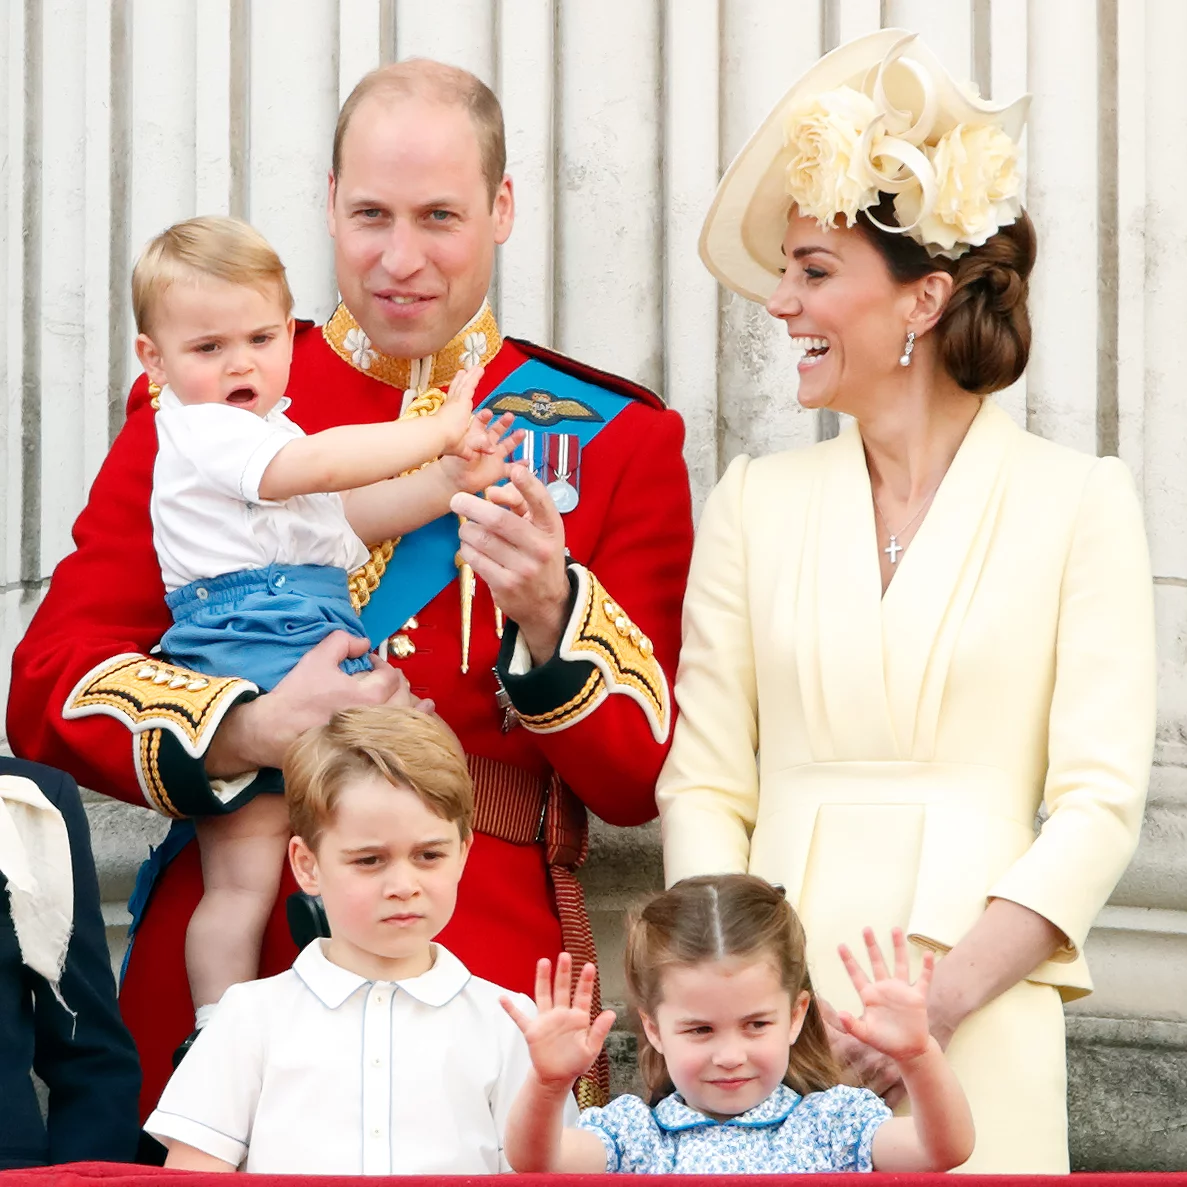 Принц Умльям и Кейт Мидлтон. Принц Уильям и Кейт Миддлтон. Дети Кейт Миддлтон и принца Уильяма. Принц Вильям и Кейт дети.